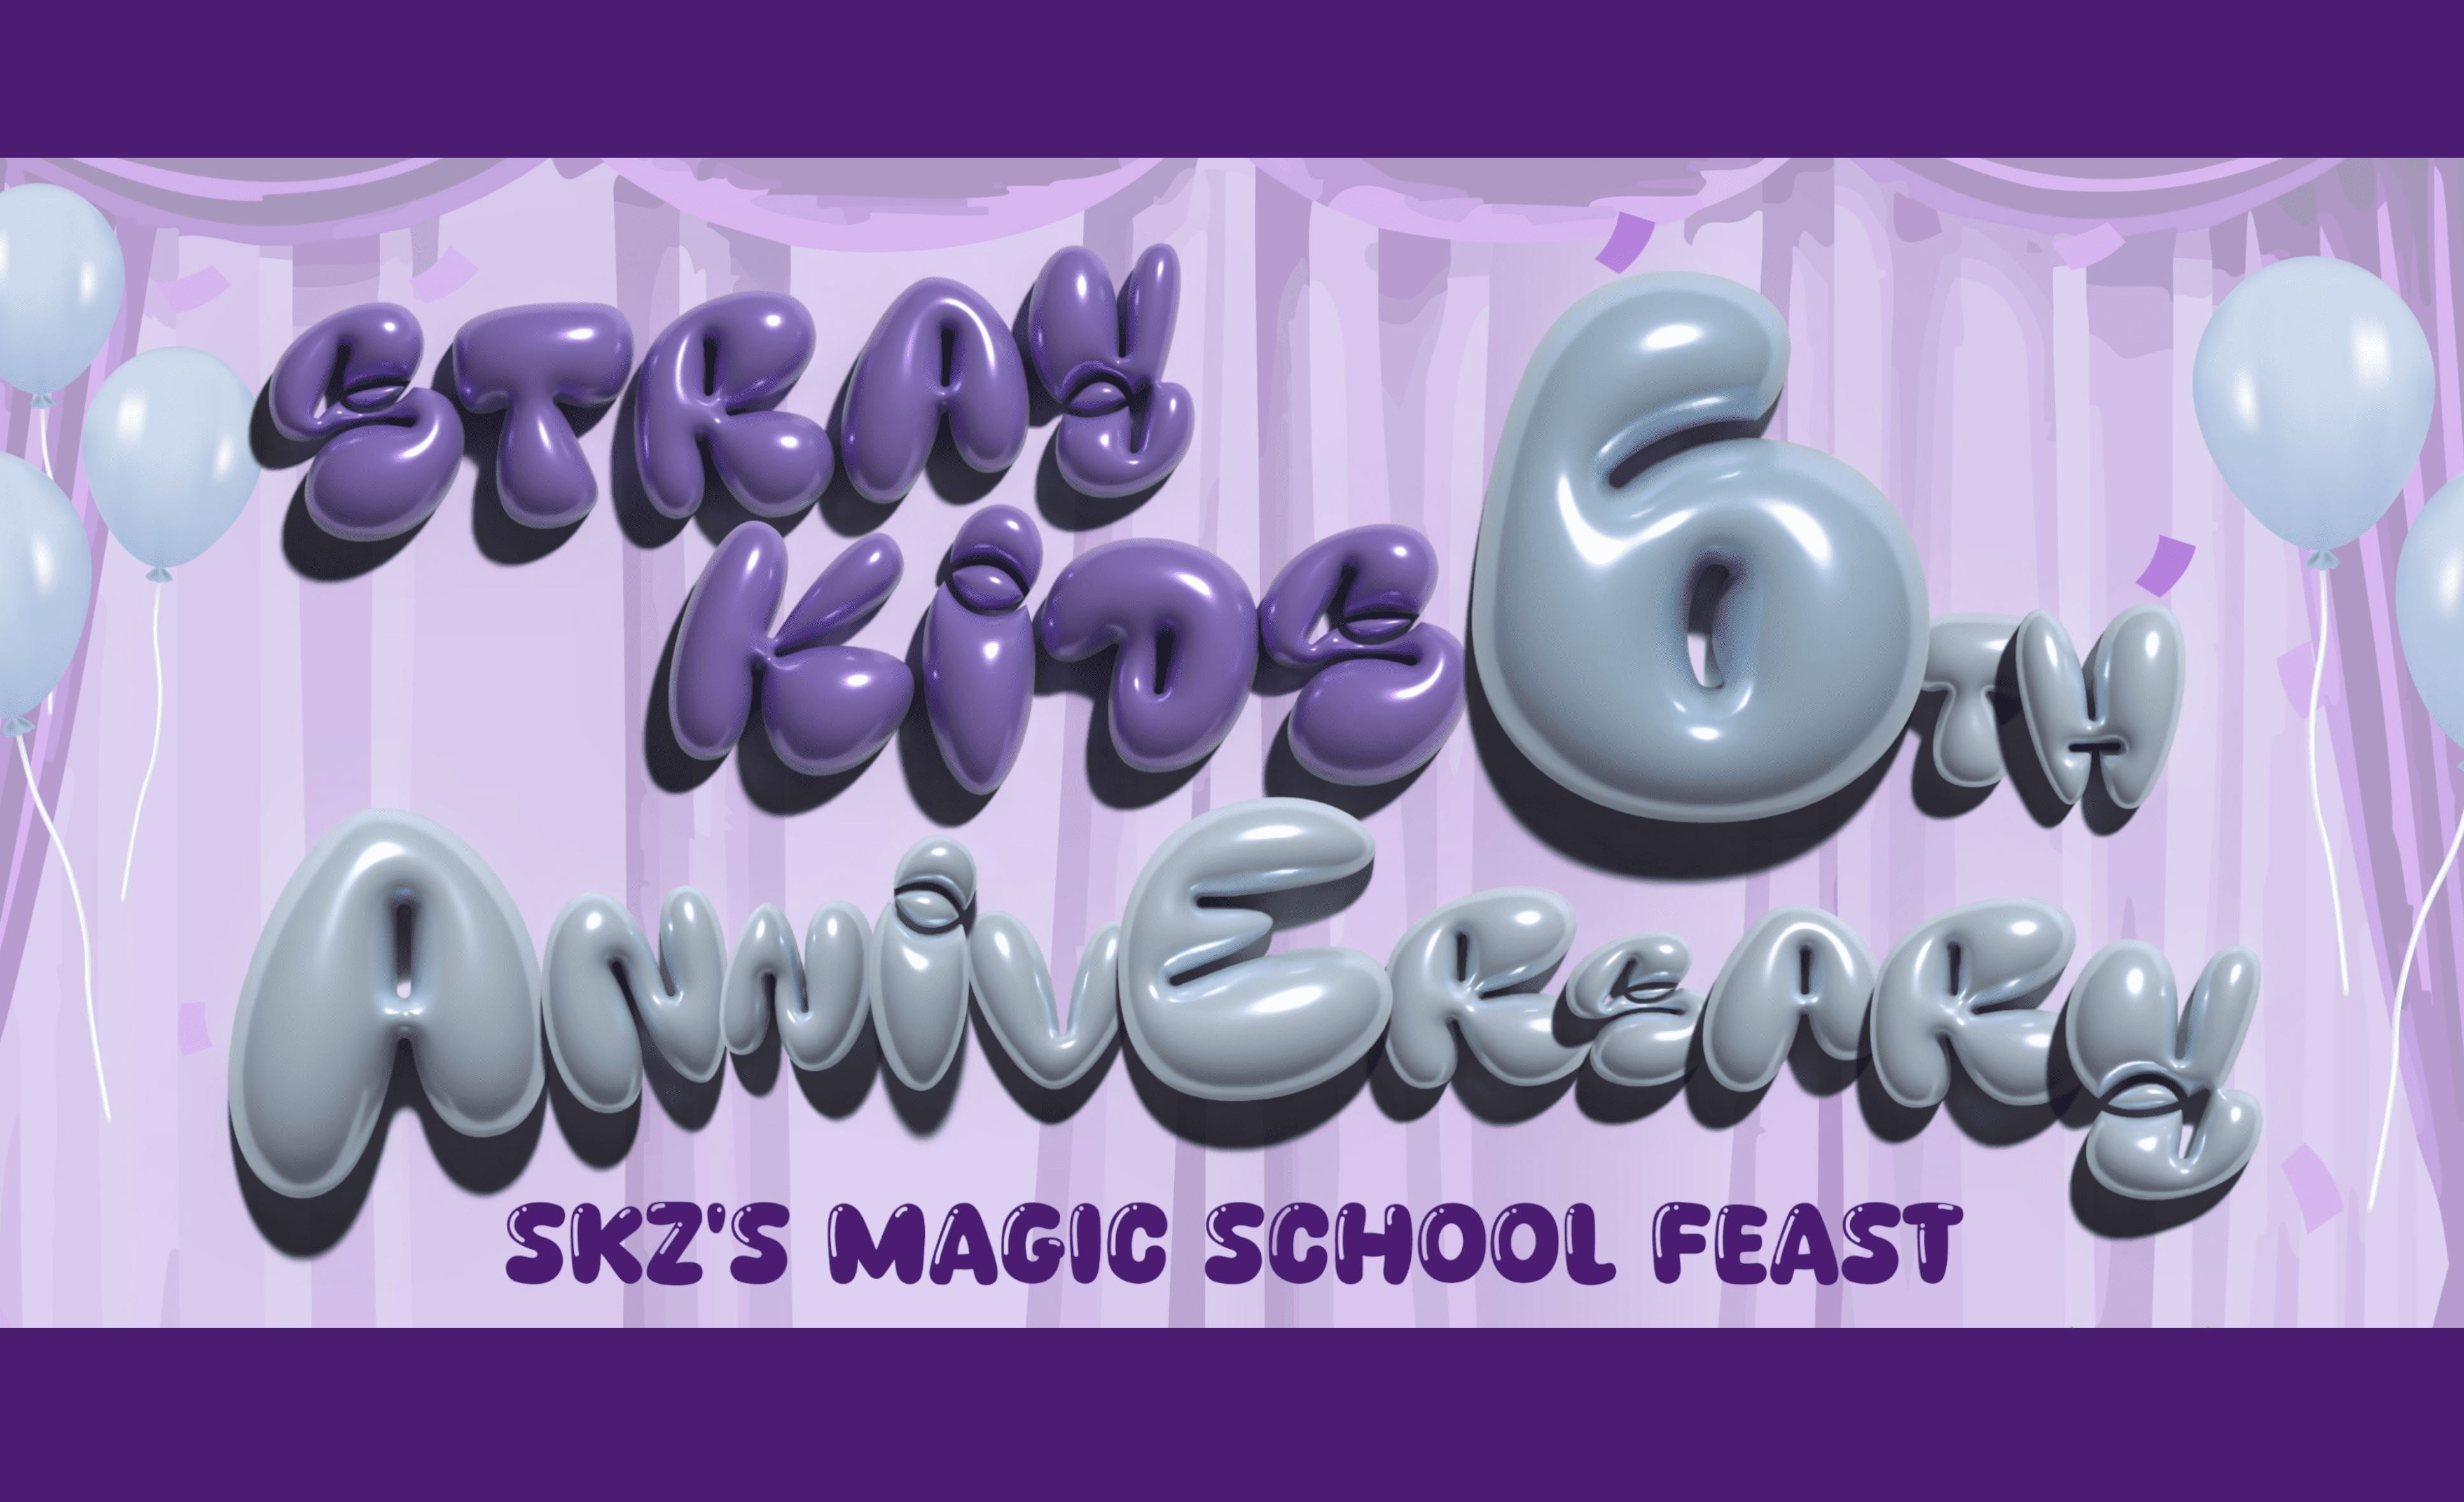 Zu Stray Kids 6. Jubiläum gibt es viele neue Fanartikel: SKZ'S MAGIC SCHOOL!